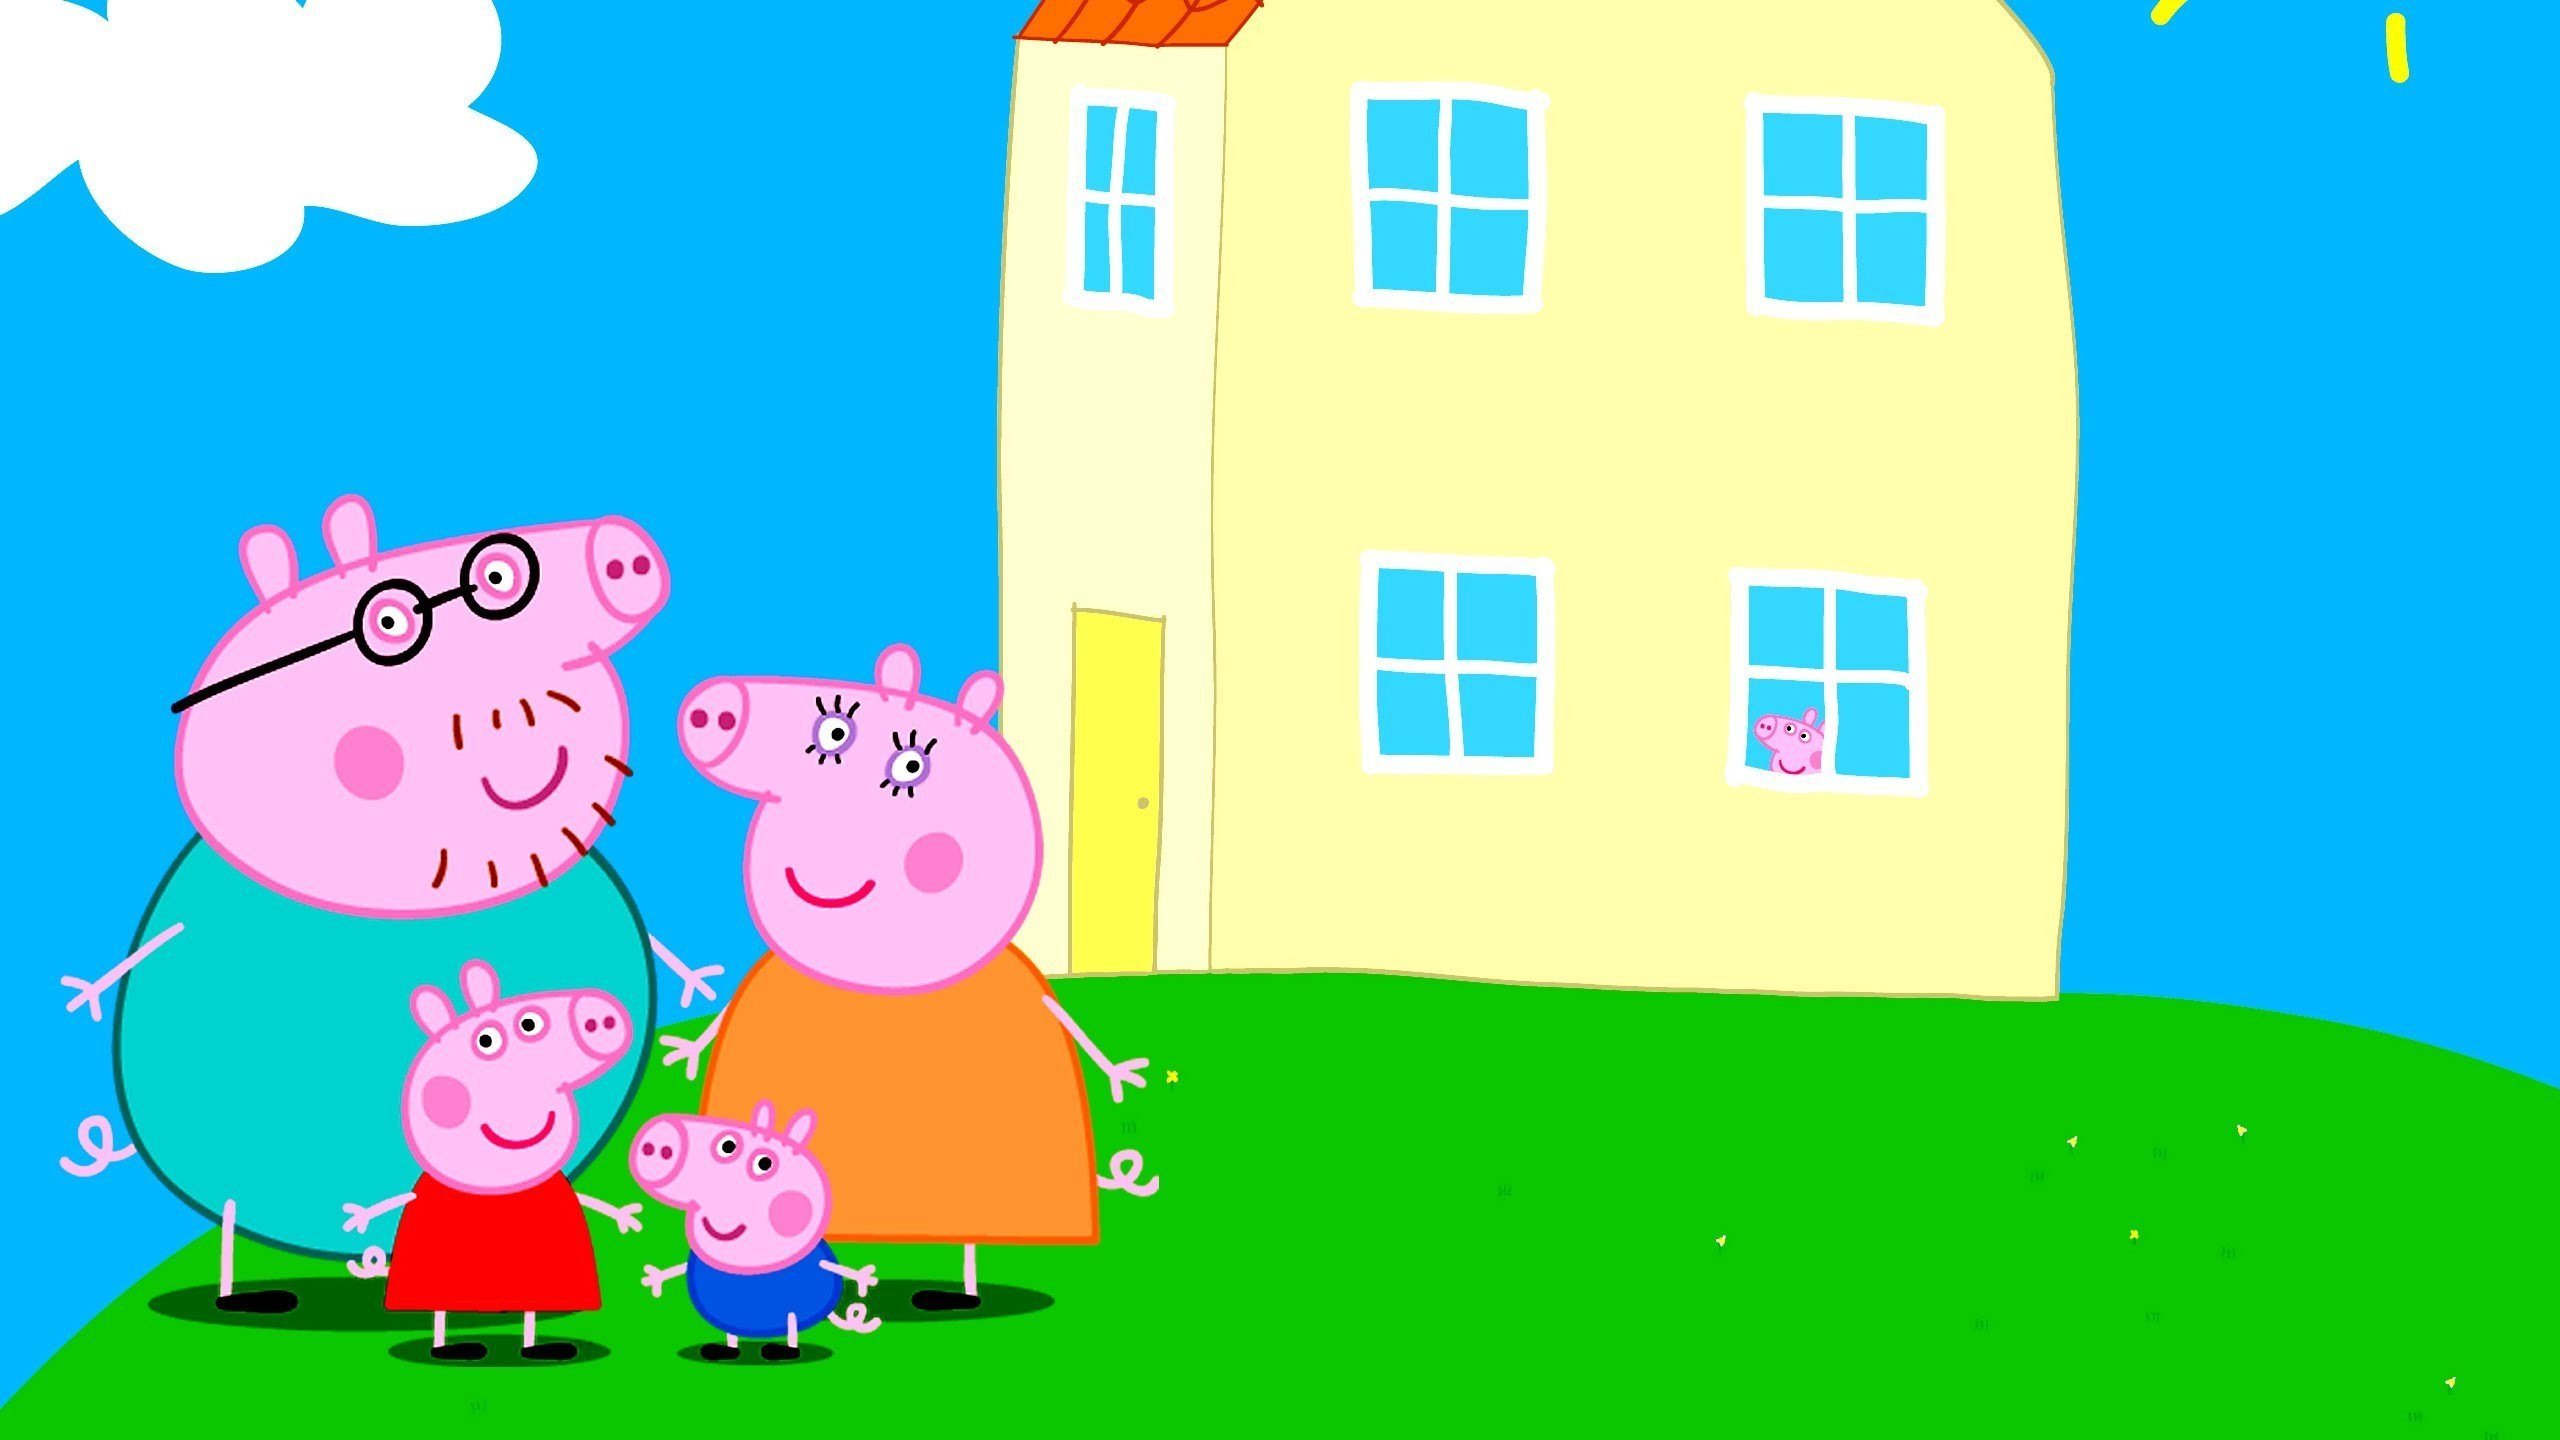 Фотографии семьи свинки пеппы. Свинка Пеппа и её семья. Свинка Пеппа её сьмья. Пеппа Пиг дом в мультике.